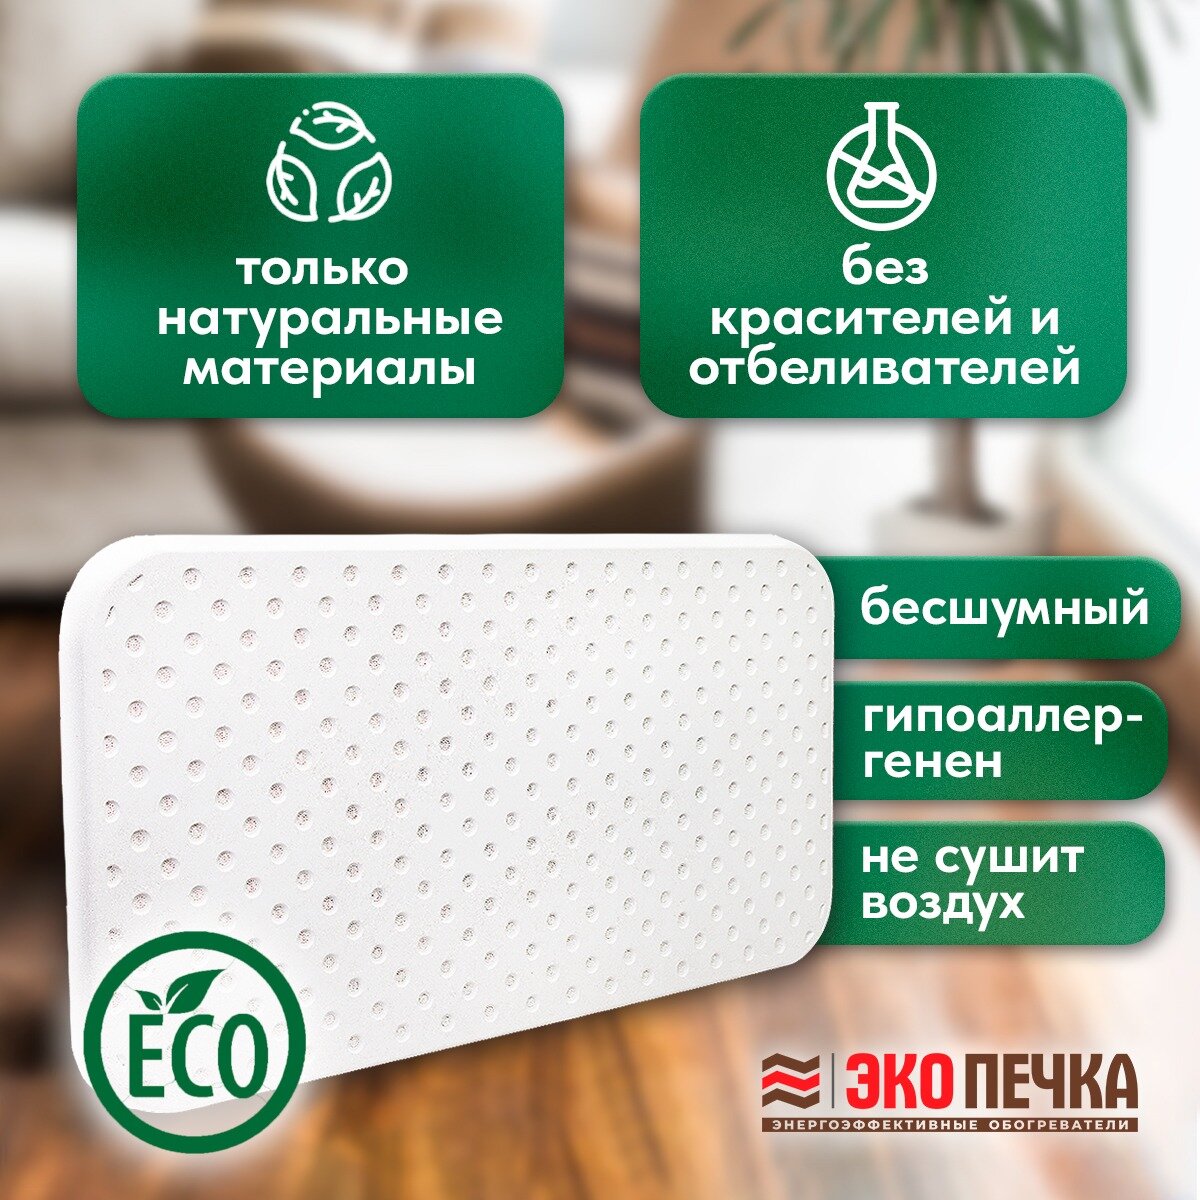 Кварцевый обогреватель "ЭкоПечка-С 480" экологичный, электрический настенный, для дома и дачи, энергосберегающий + подарок отражающий экран + гарантия 10 лет